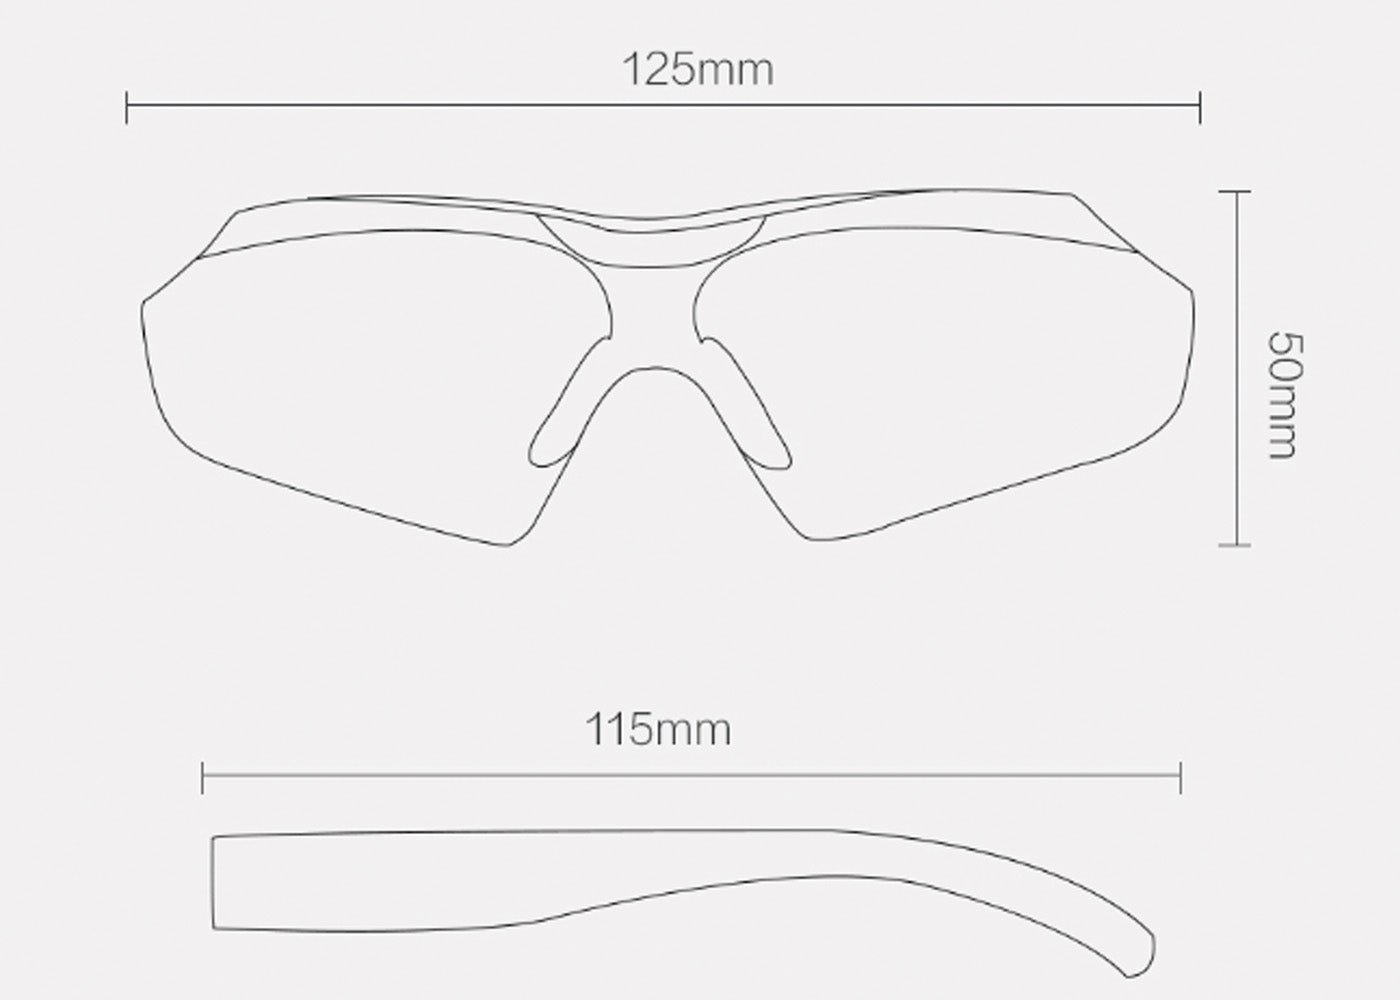 Ni zapatillas ni colchones, lo nuevo de Xiaomi son unas gafas para conducir